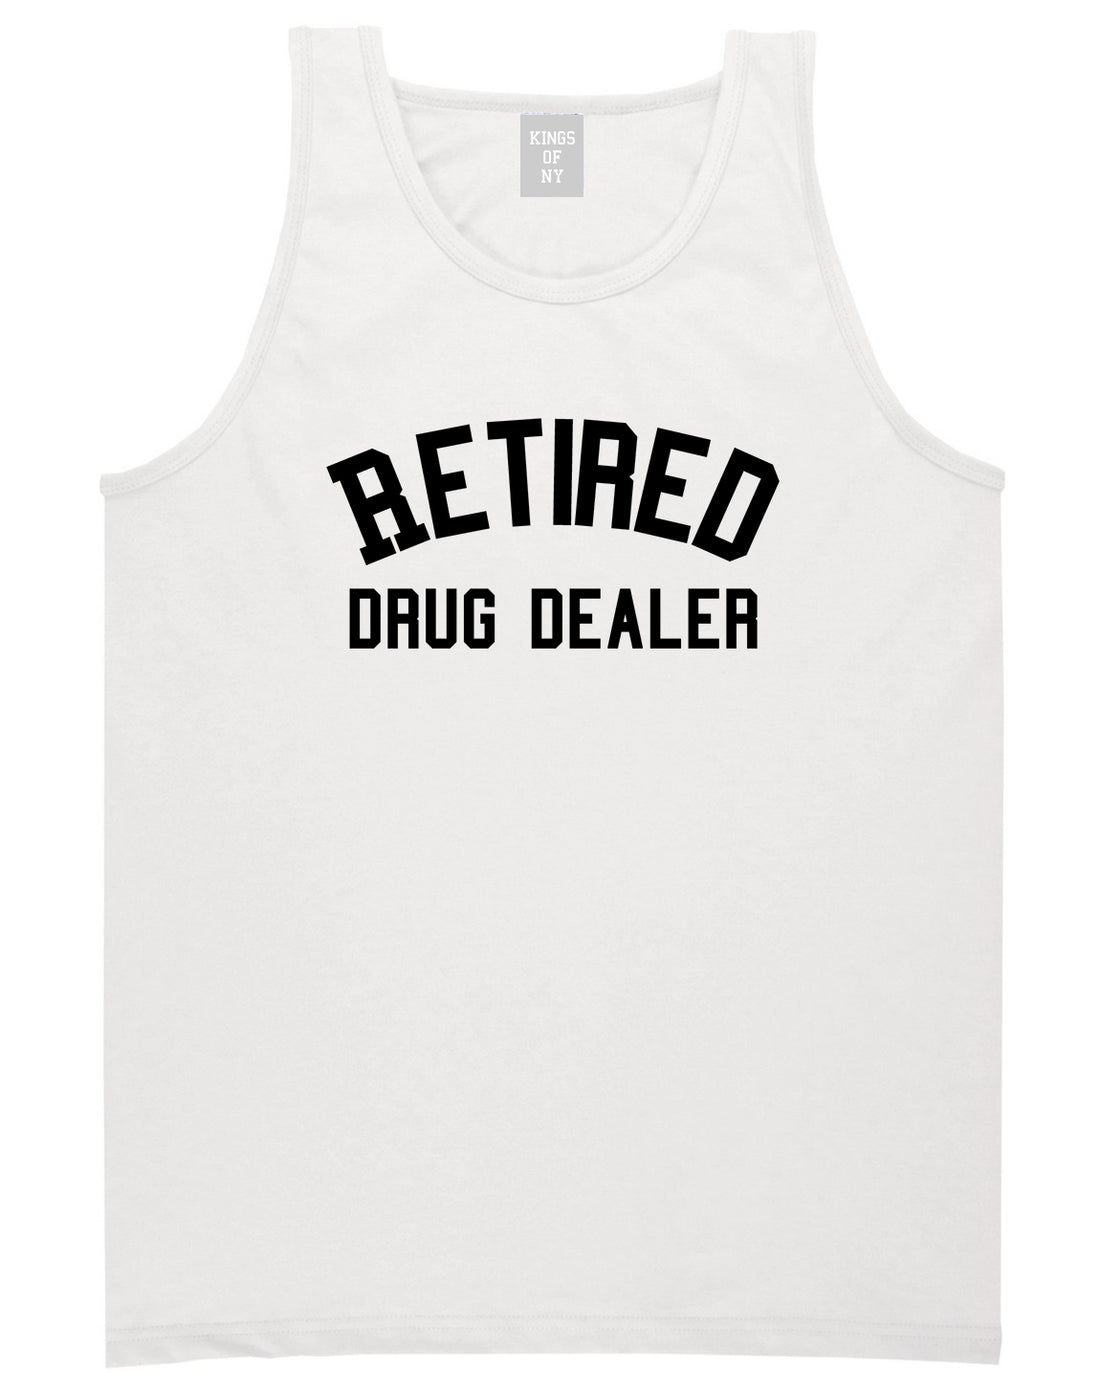 Retired_Drug_Dealer Mens White Tank Top Shirt by Kings Of NY